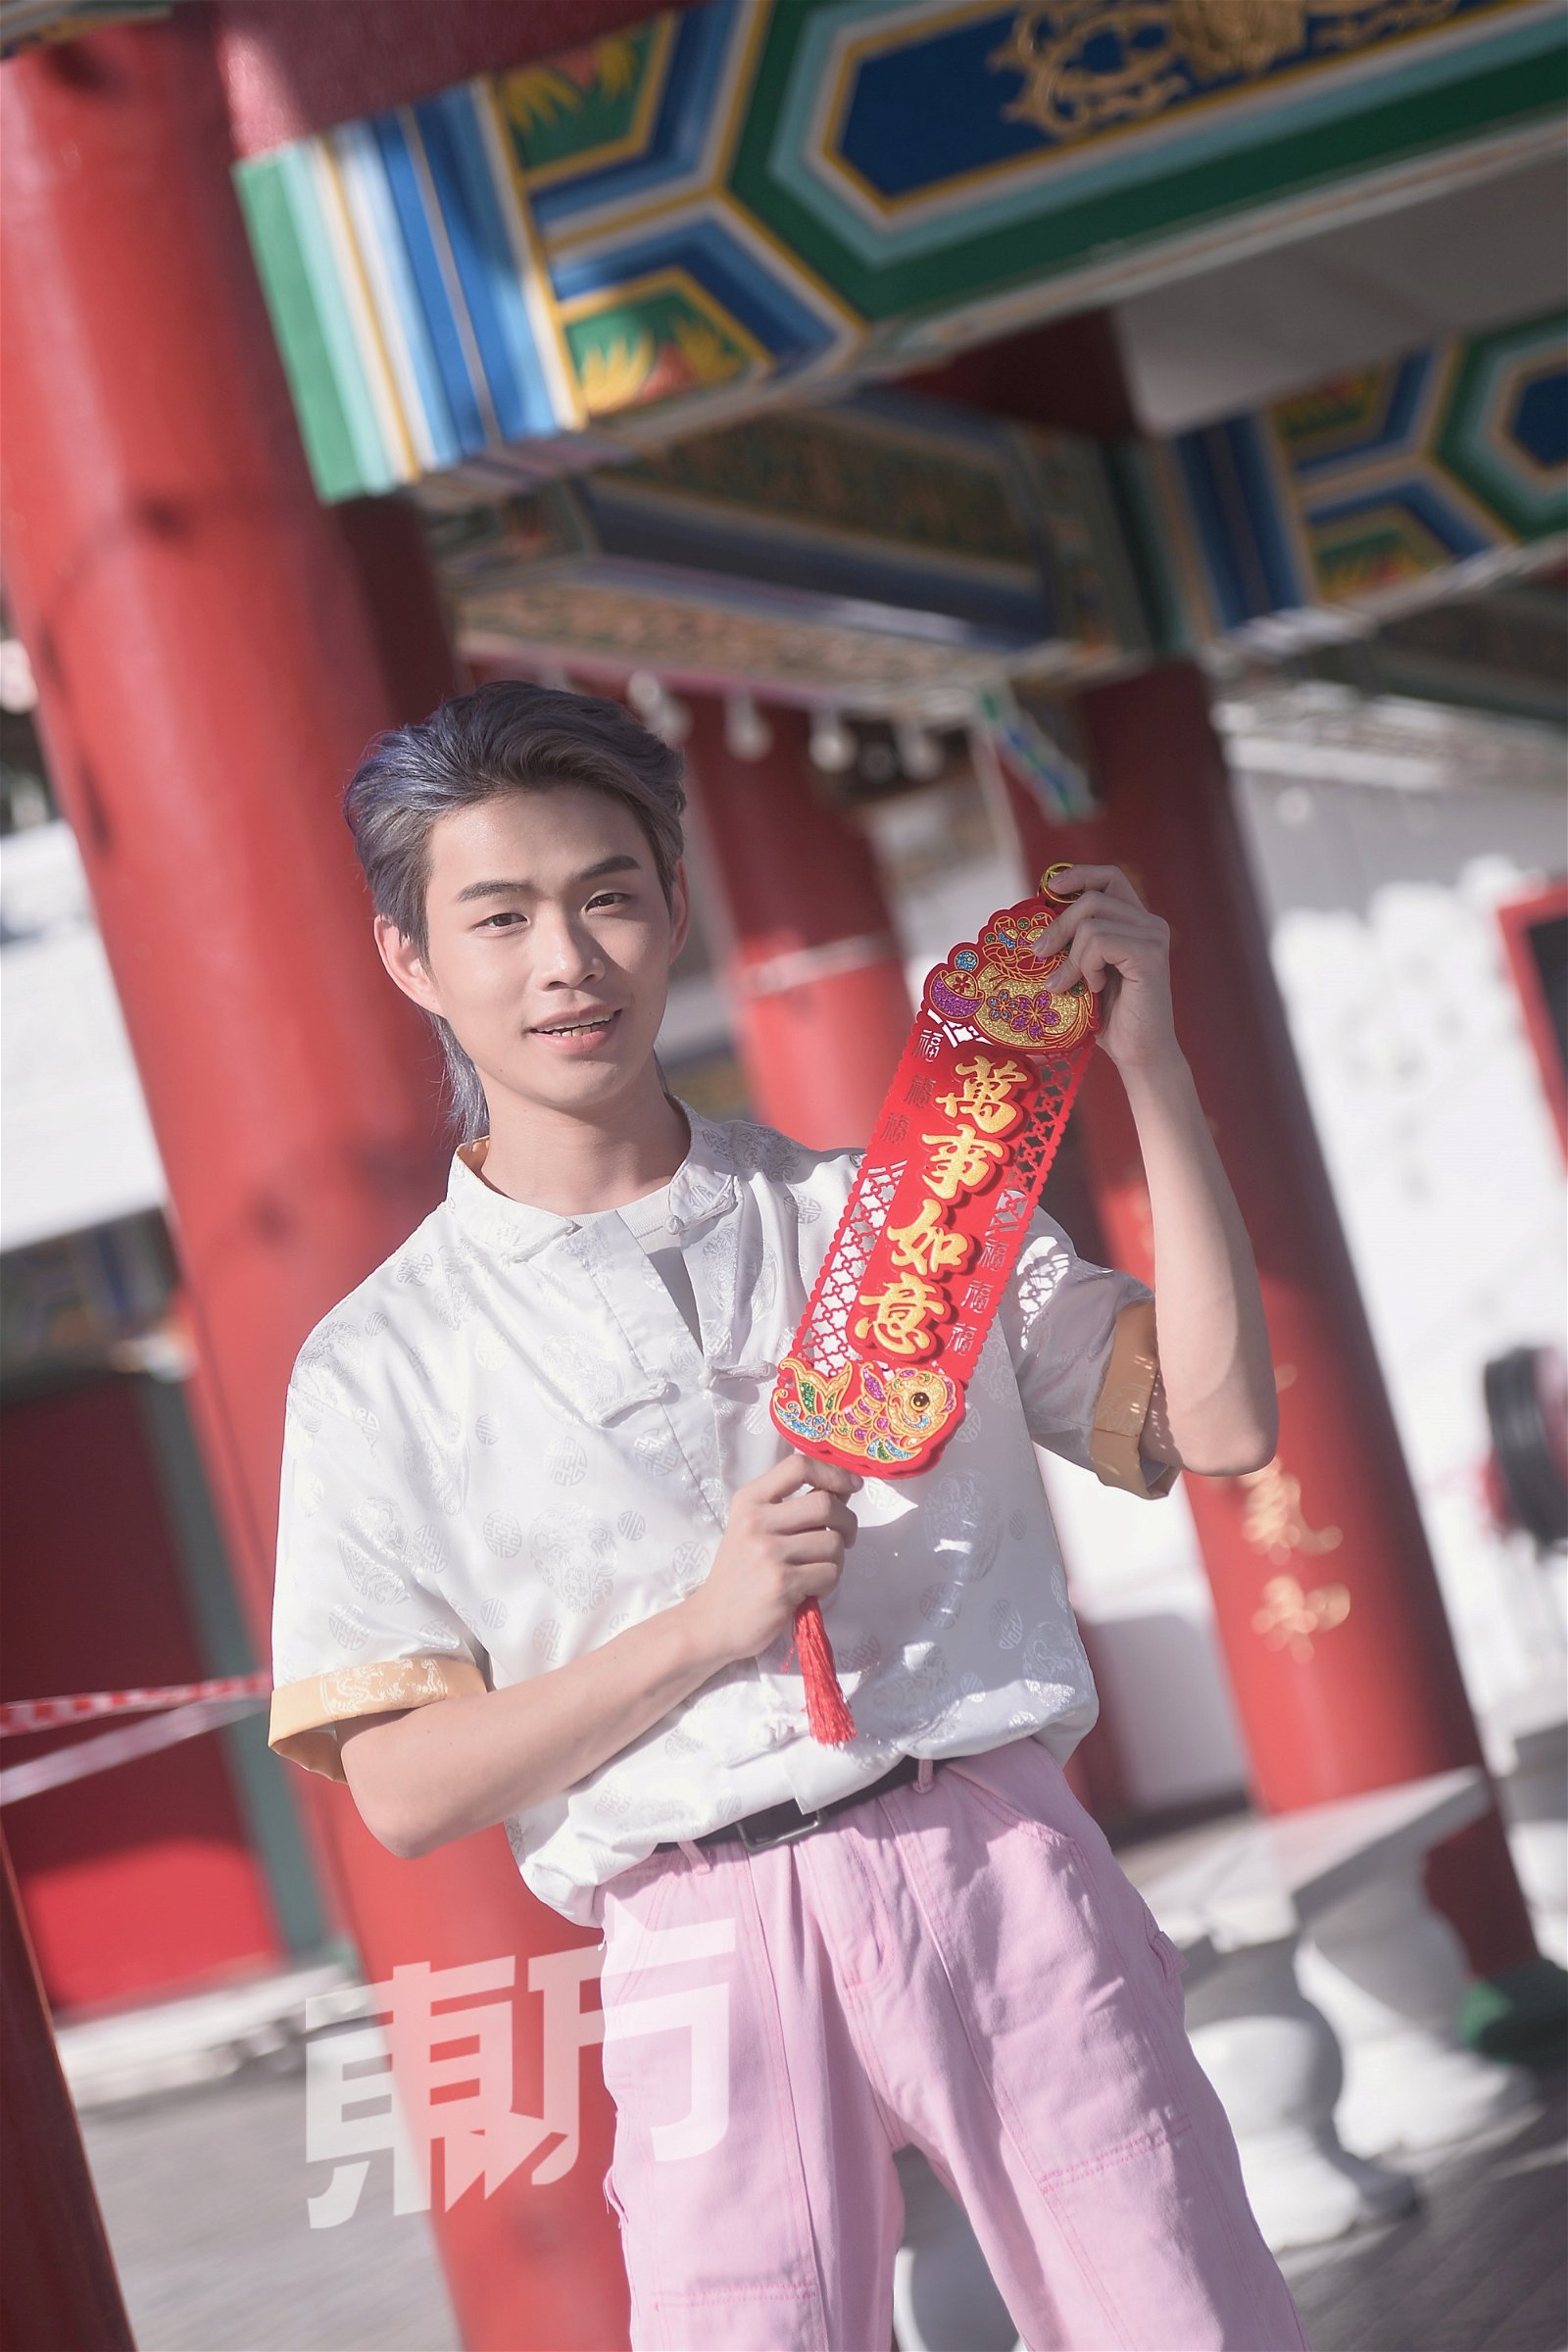 舞龙世家出身的魏少泷，也希望舞龙这个传统能在马来西亚继续传承下去，盼更多年轻人能加入舞龙队的行列注入更多新创意。